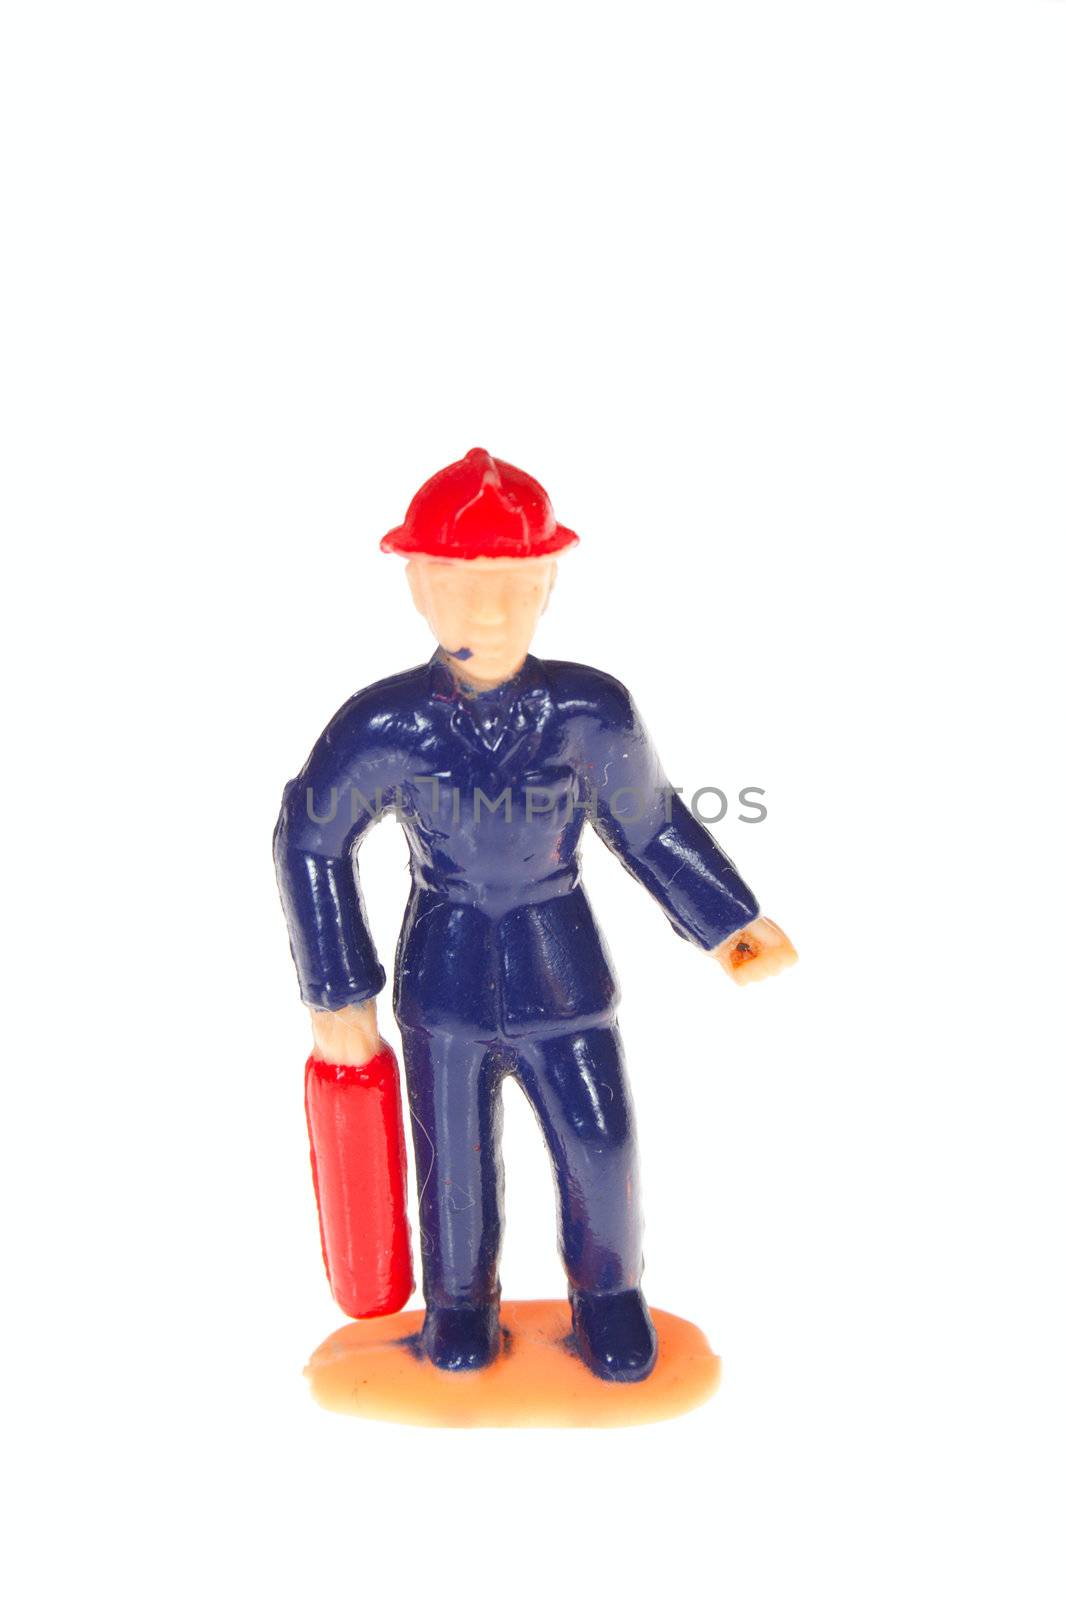 plastic fireman by aguirre_mar